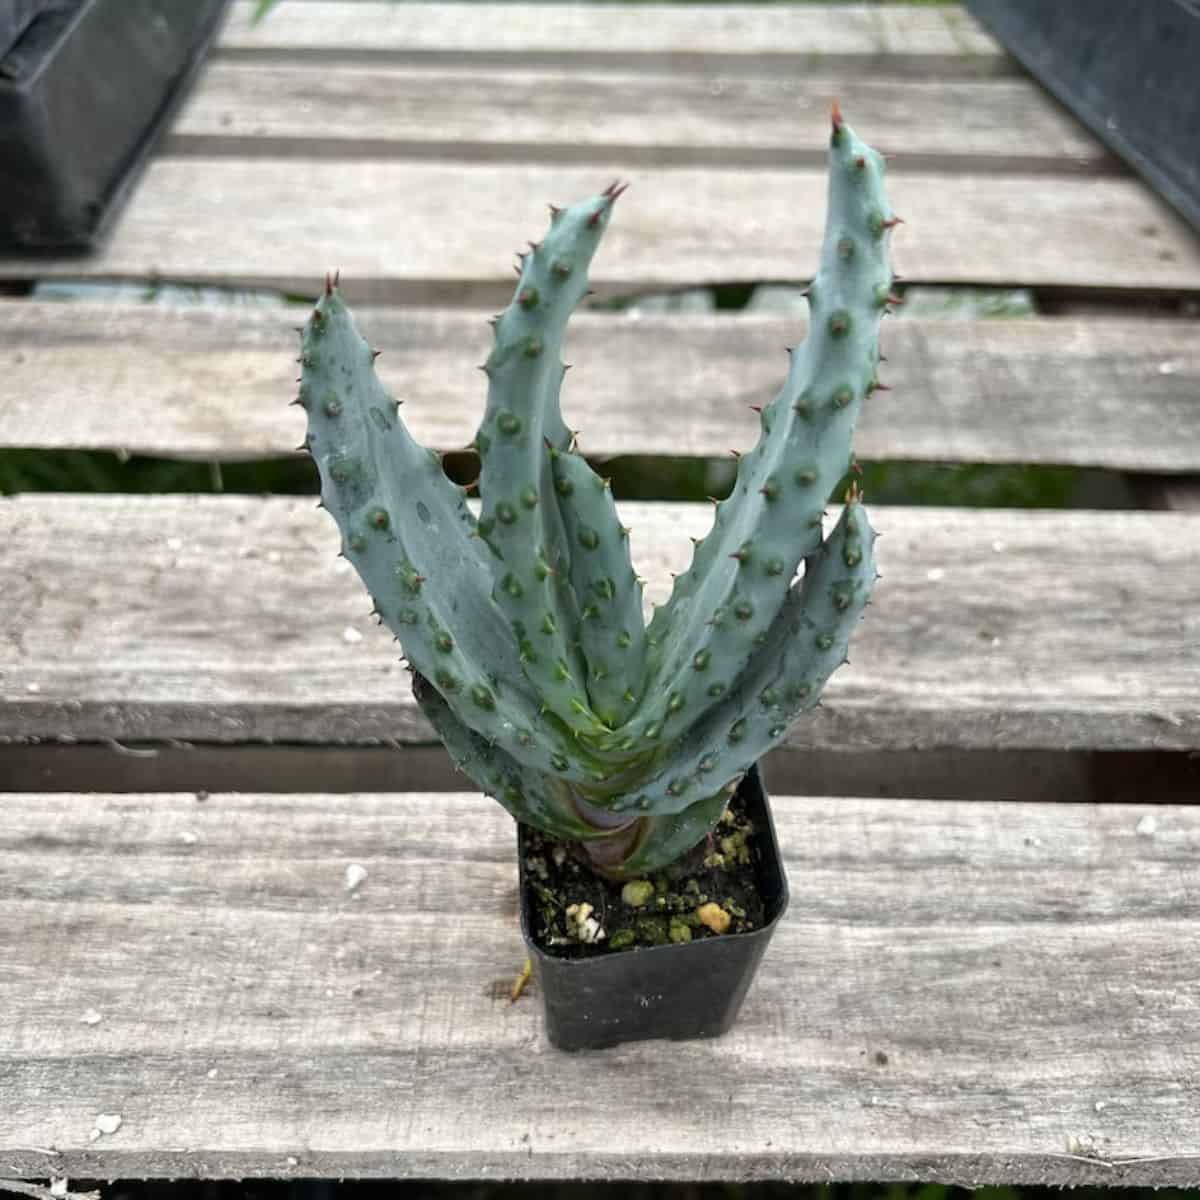 Aloe ferox grows in a small black pot.